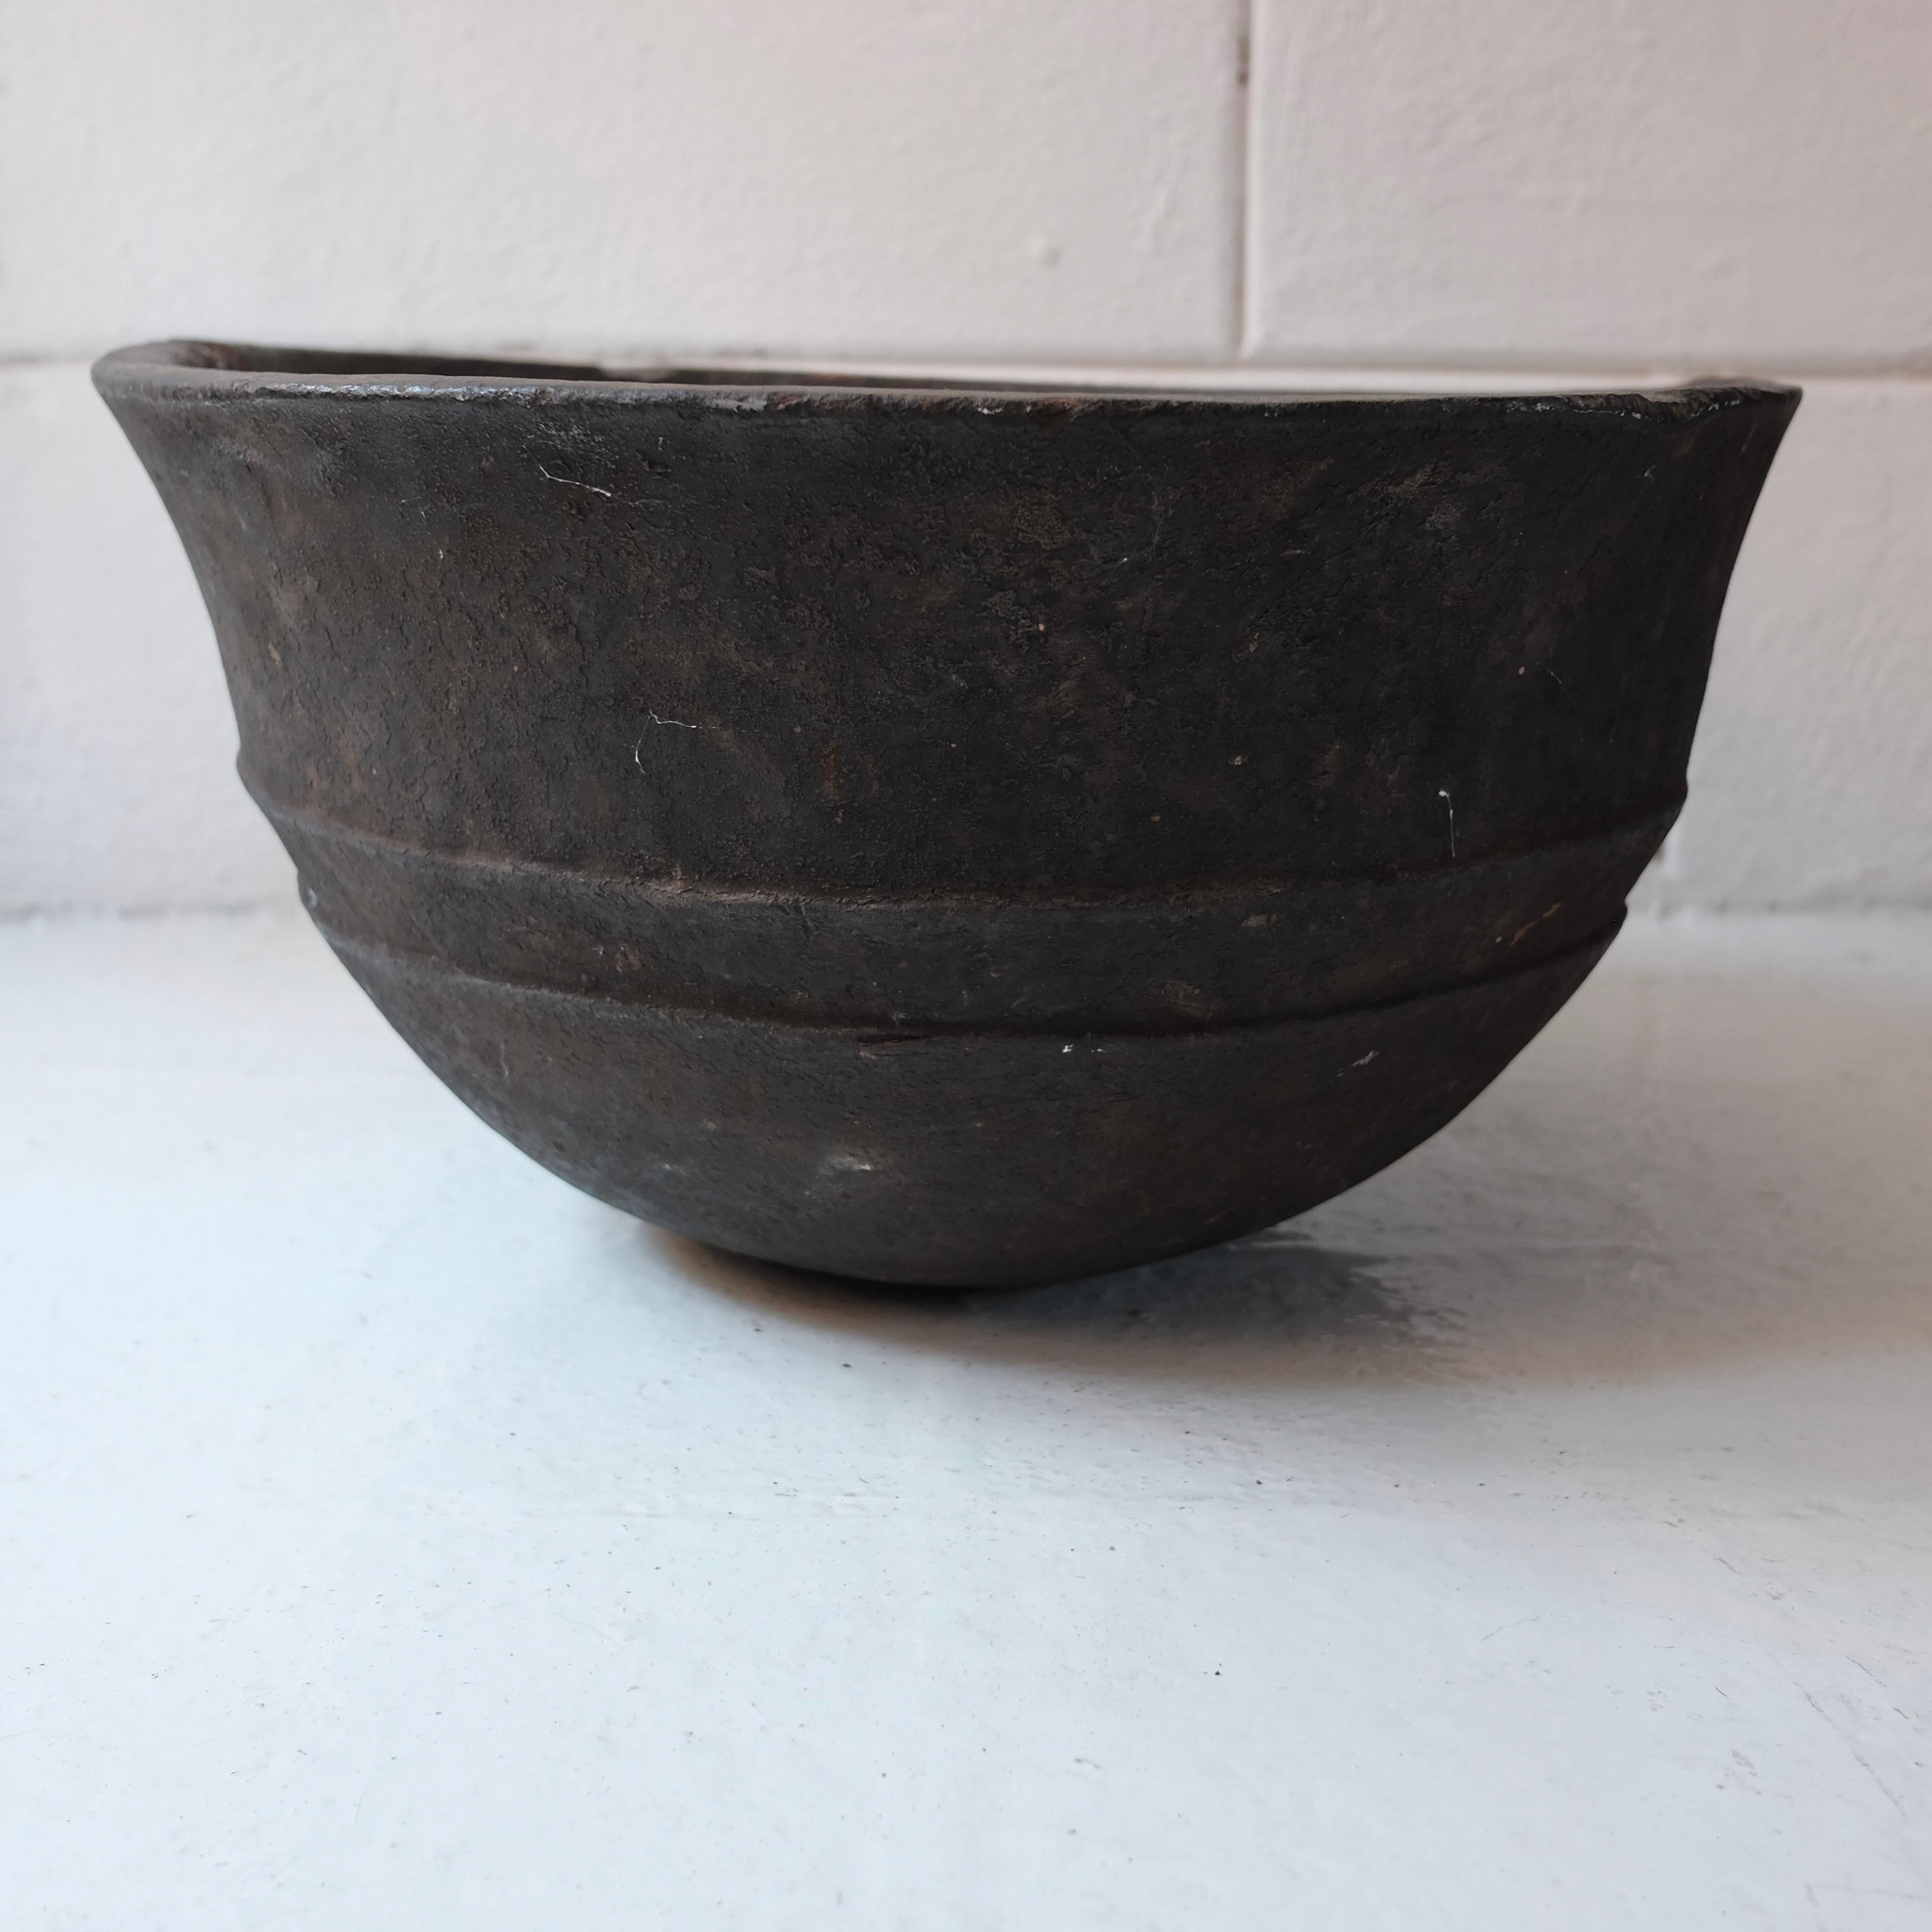 Rustic Dan Wooden Bowl from Liberia